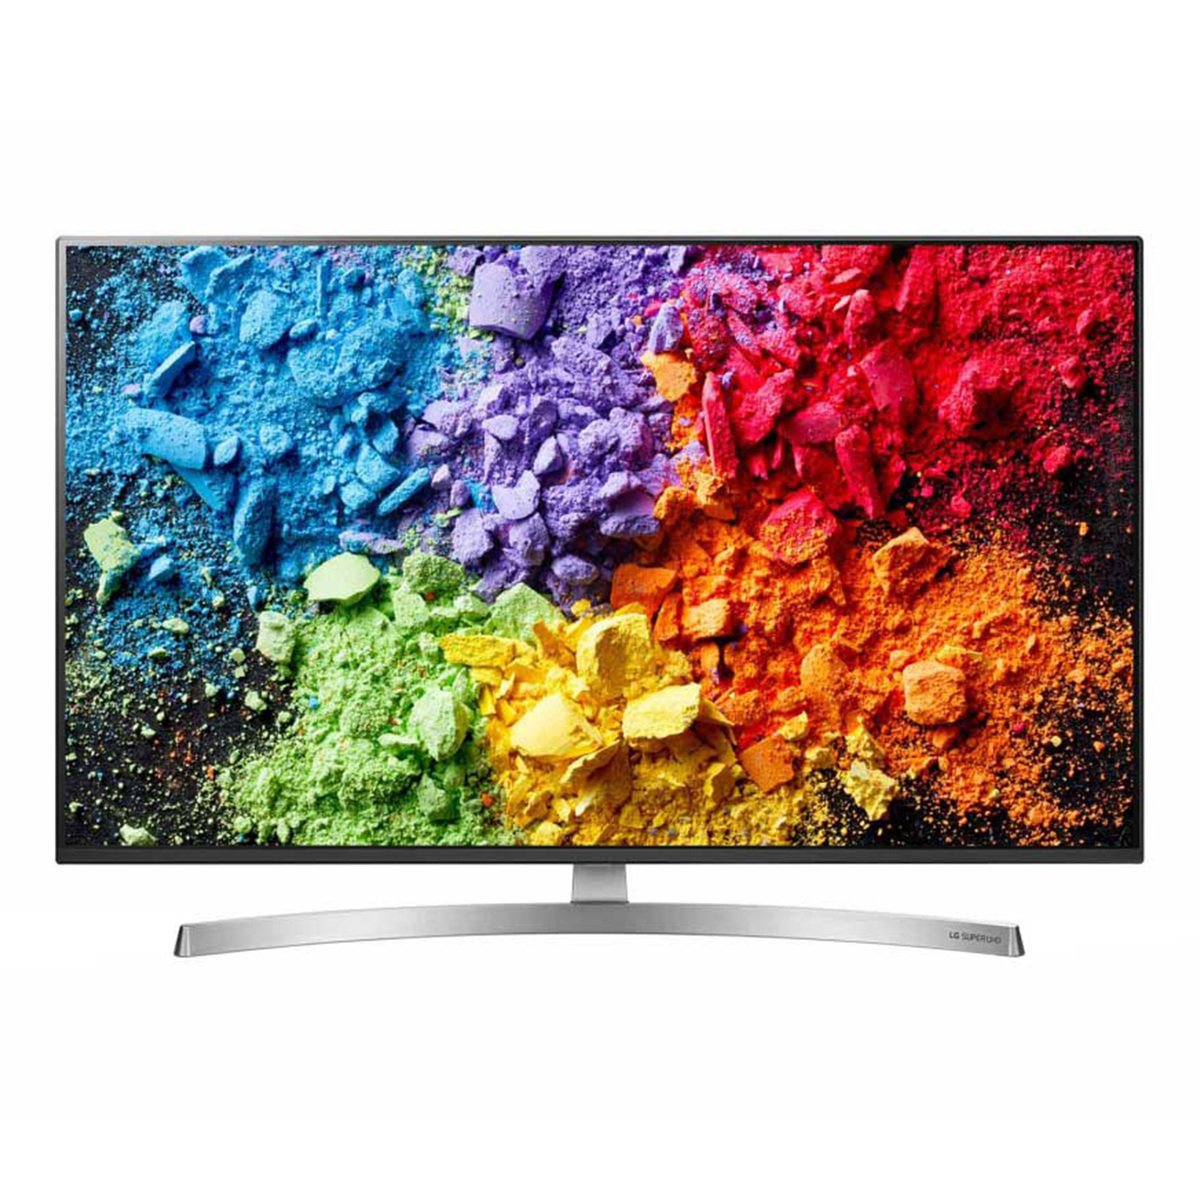 LG Ultra HD Smart LED TV 55SK8500PVA 55inch